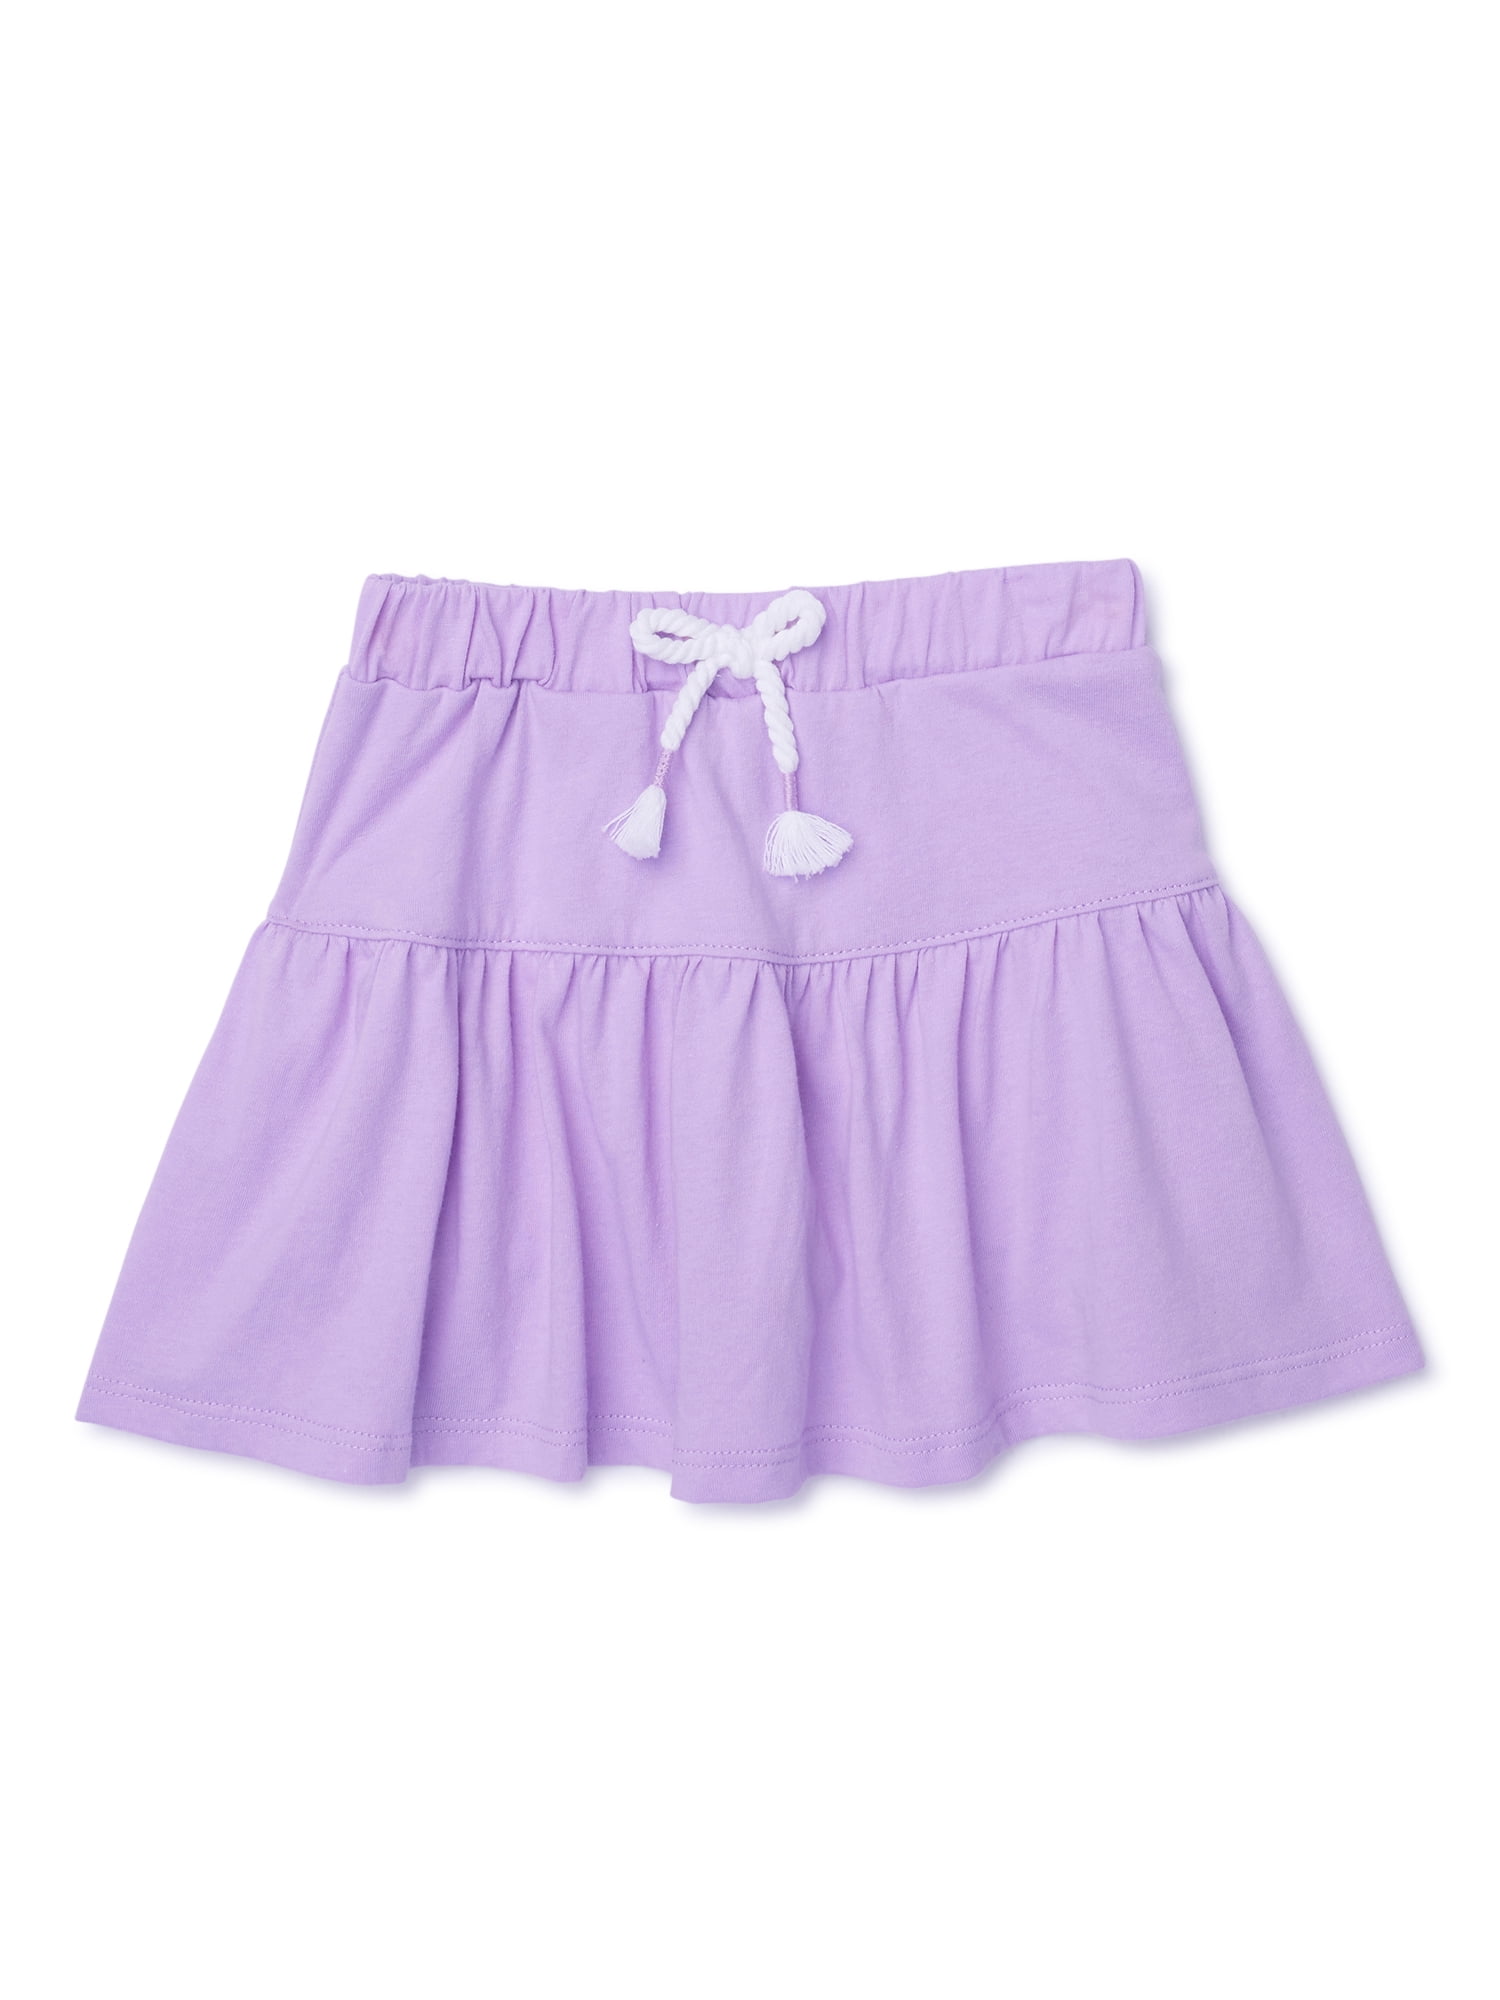 Garanimals 365 Kids Girls Bow Plain Leggings - Light Purple